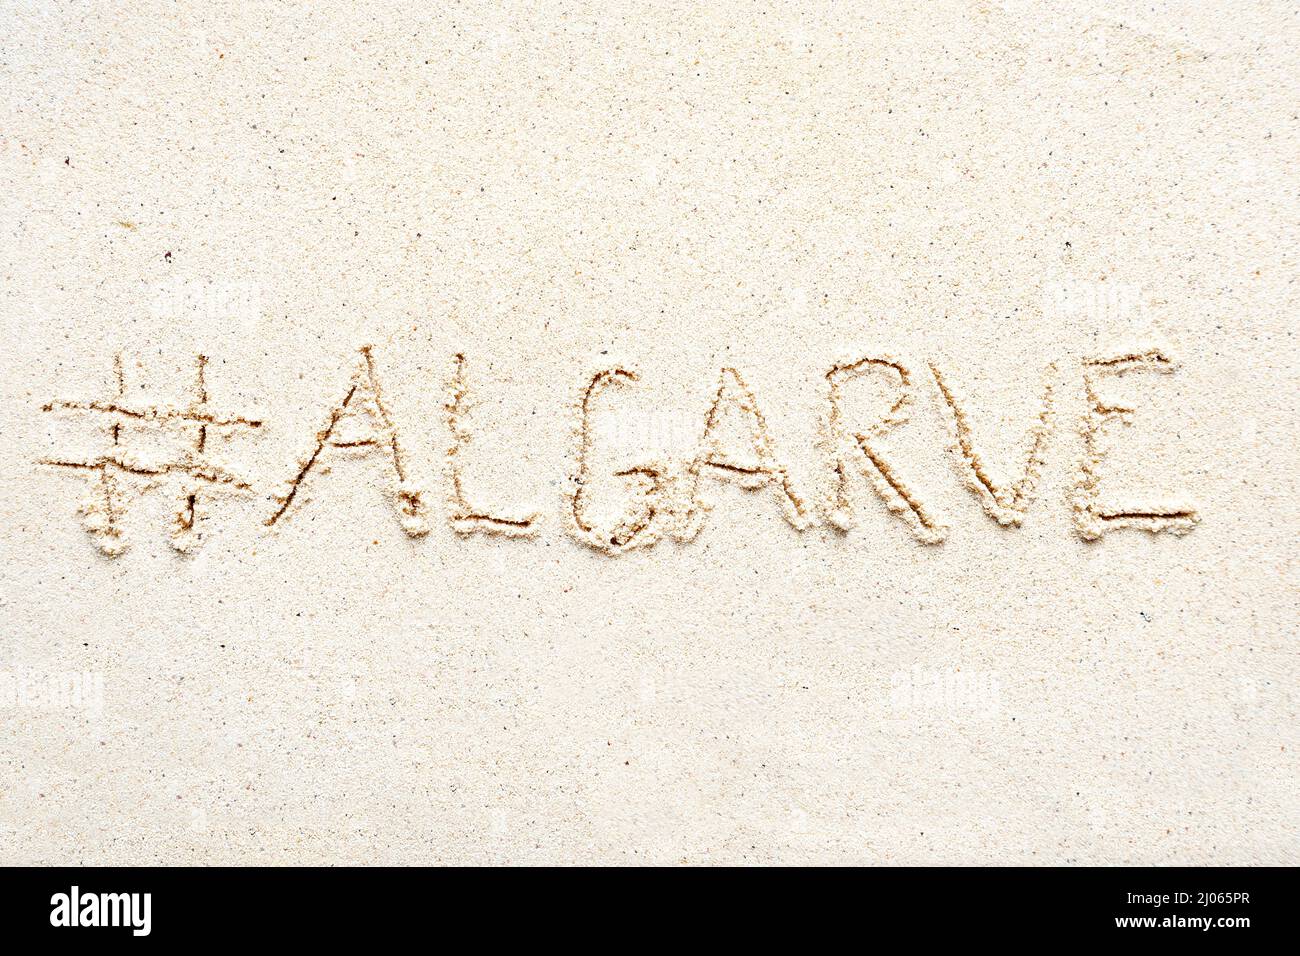 Scrivere a mano le parole 'Algarve' sulla sabbia della spiaggia Foto Stock